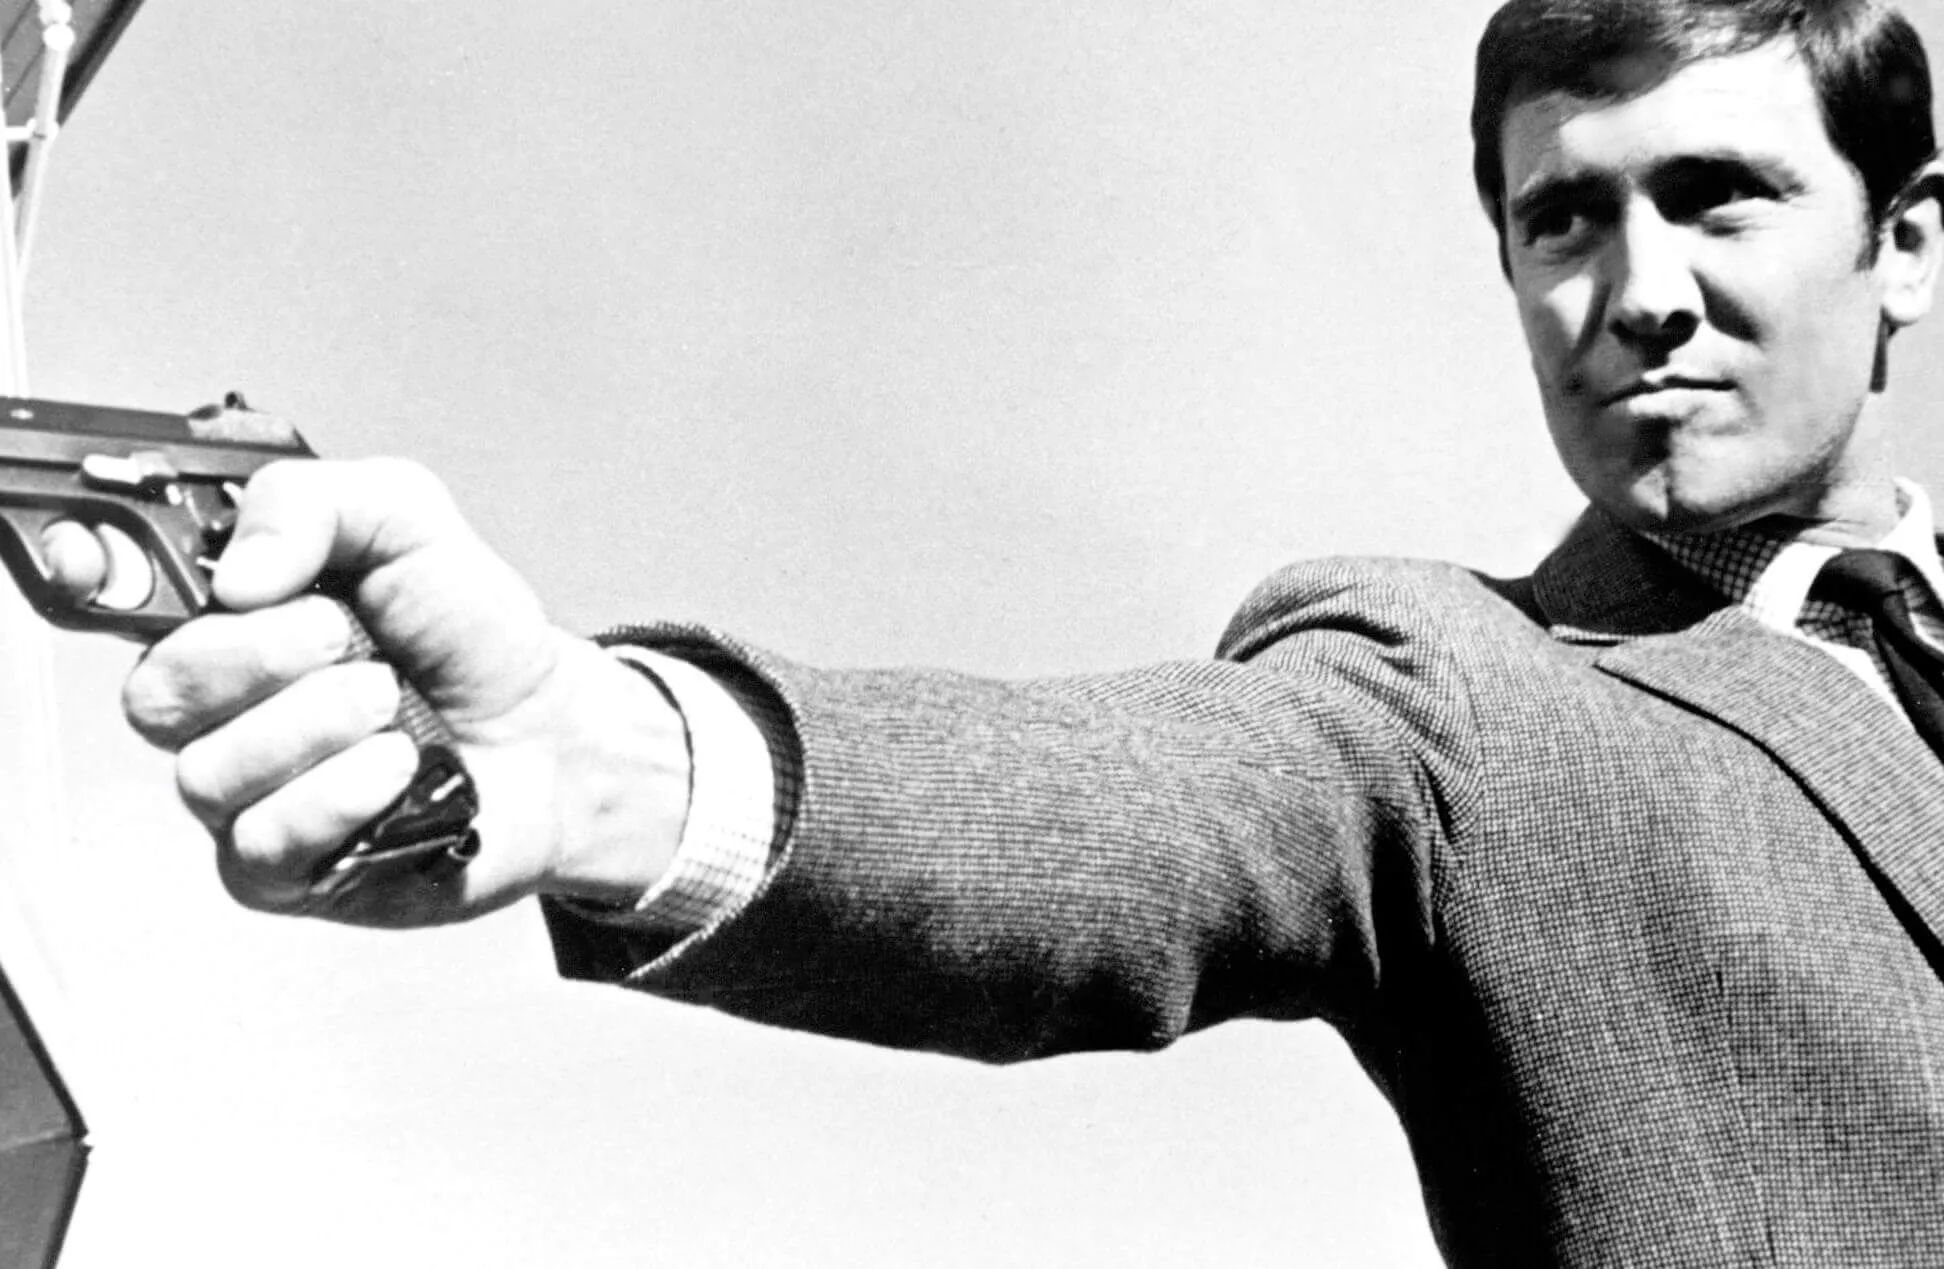 George Lazenby as James Bond holding a gun